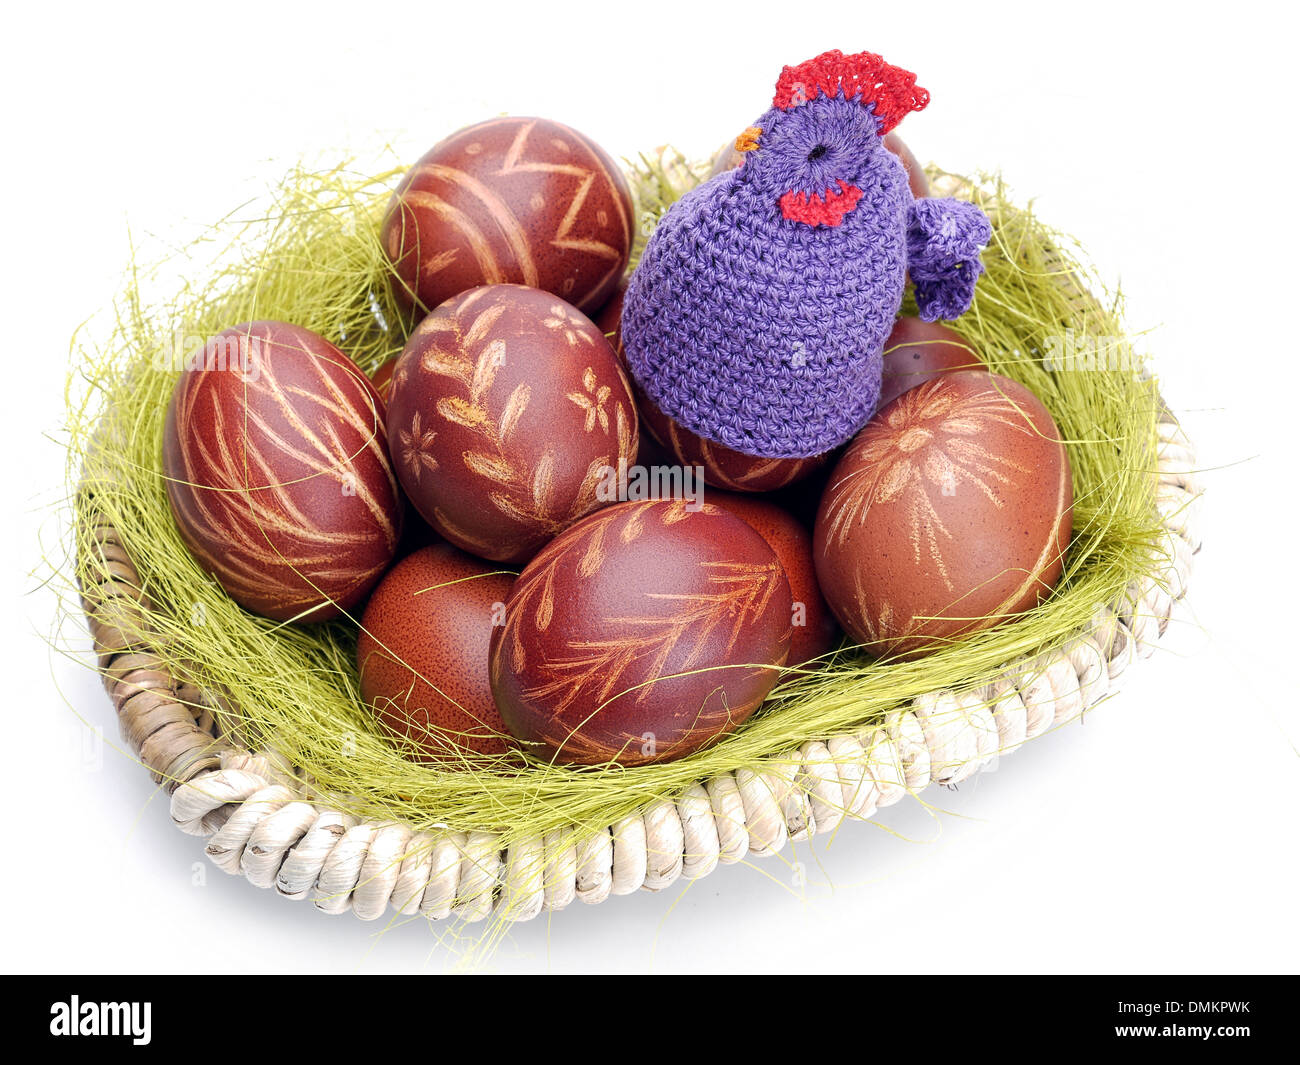 Crochet sitter sitting on easter eggs in wicker basket shot on white Stock Photo